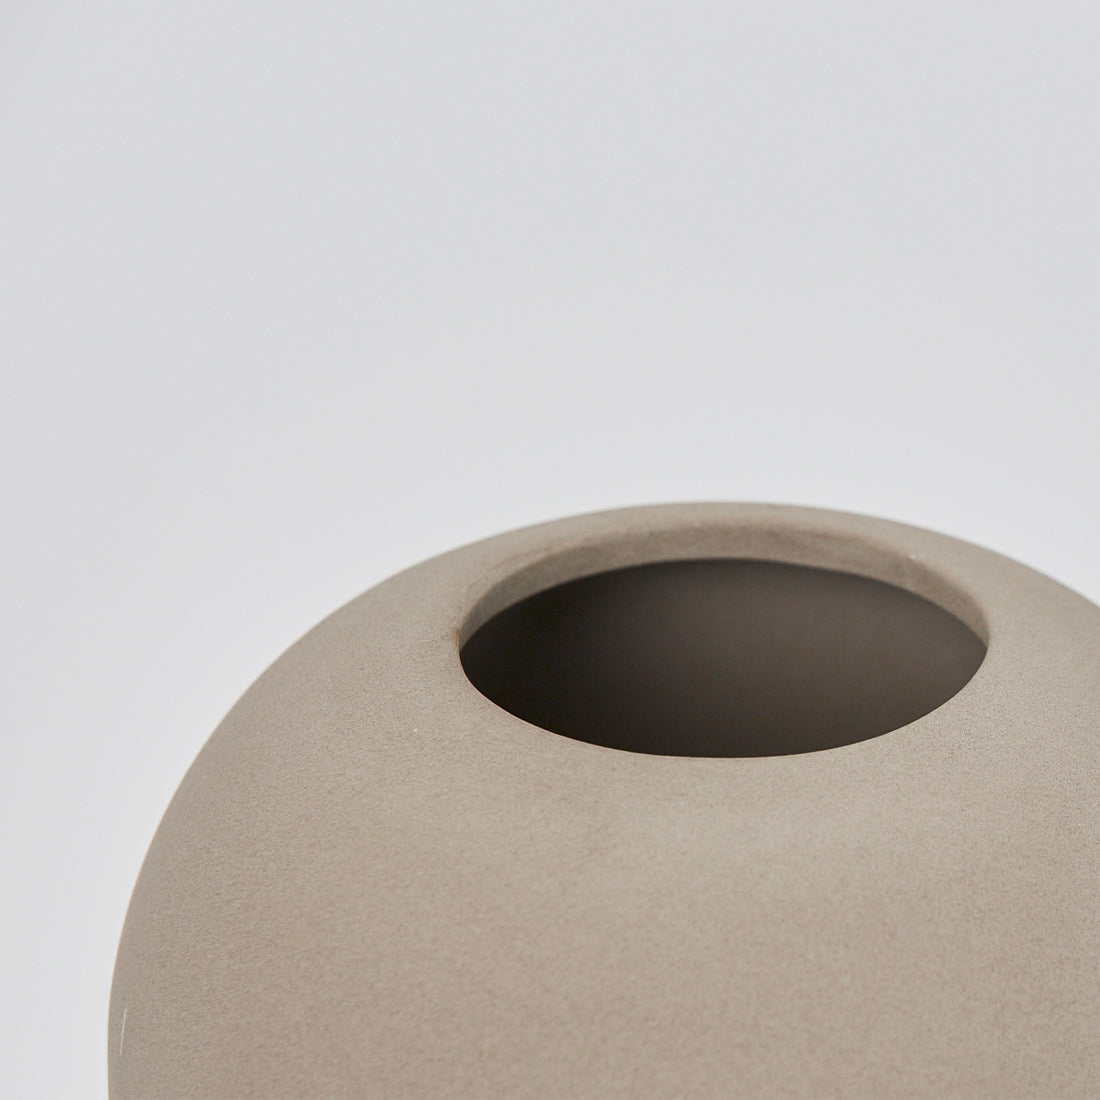 Detaljer af den unikke Dome medium vase fra Kristina Dam studio